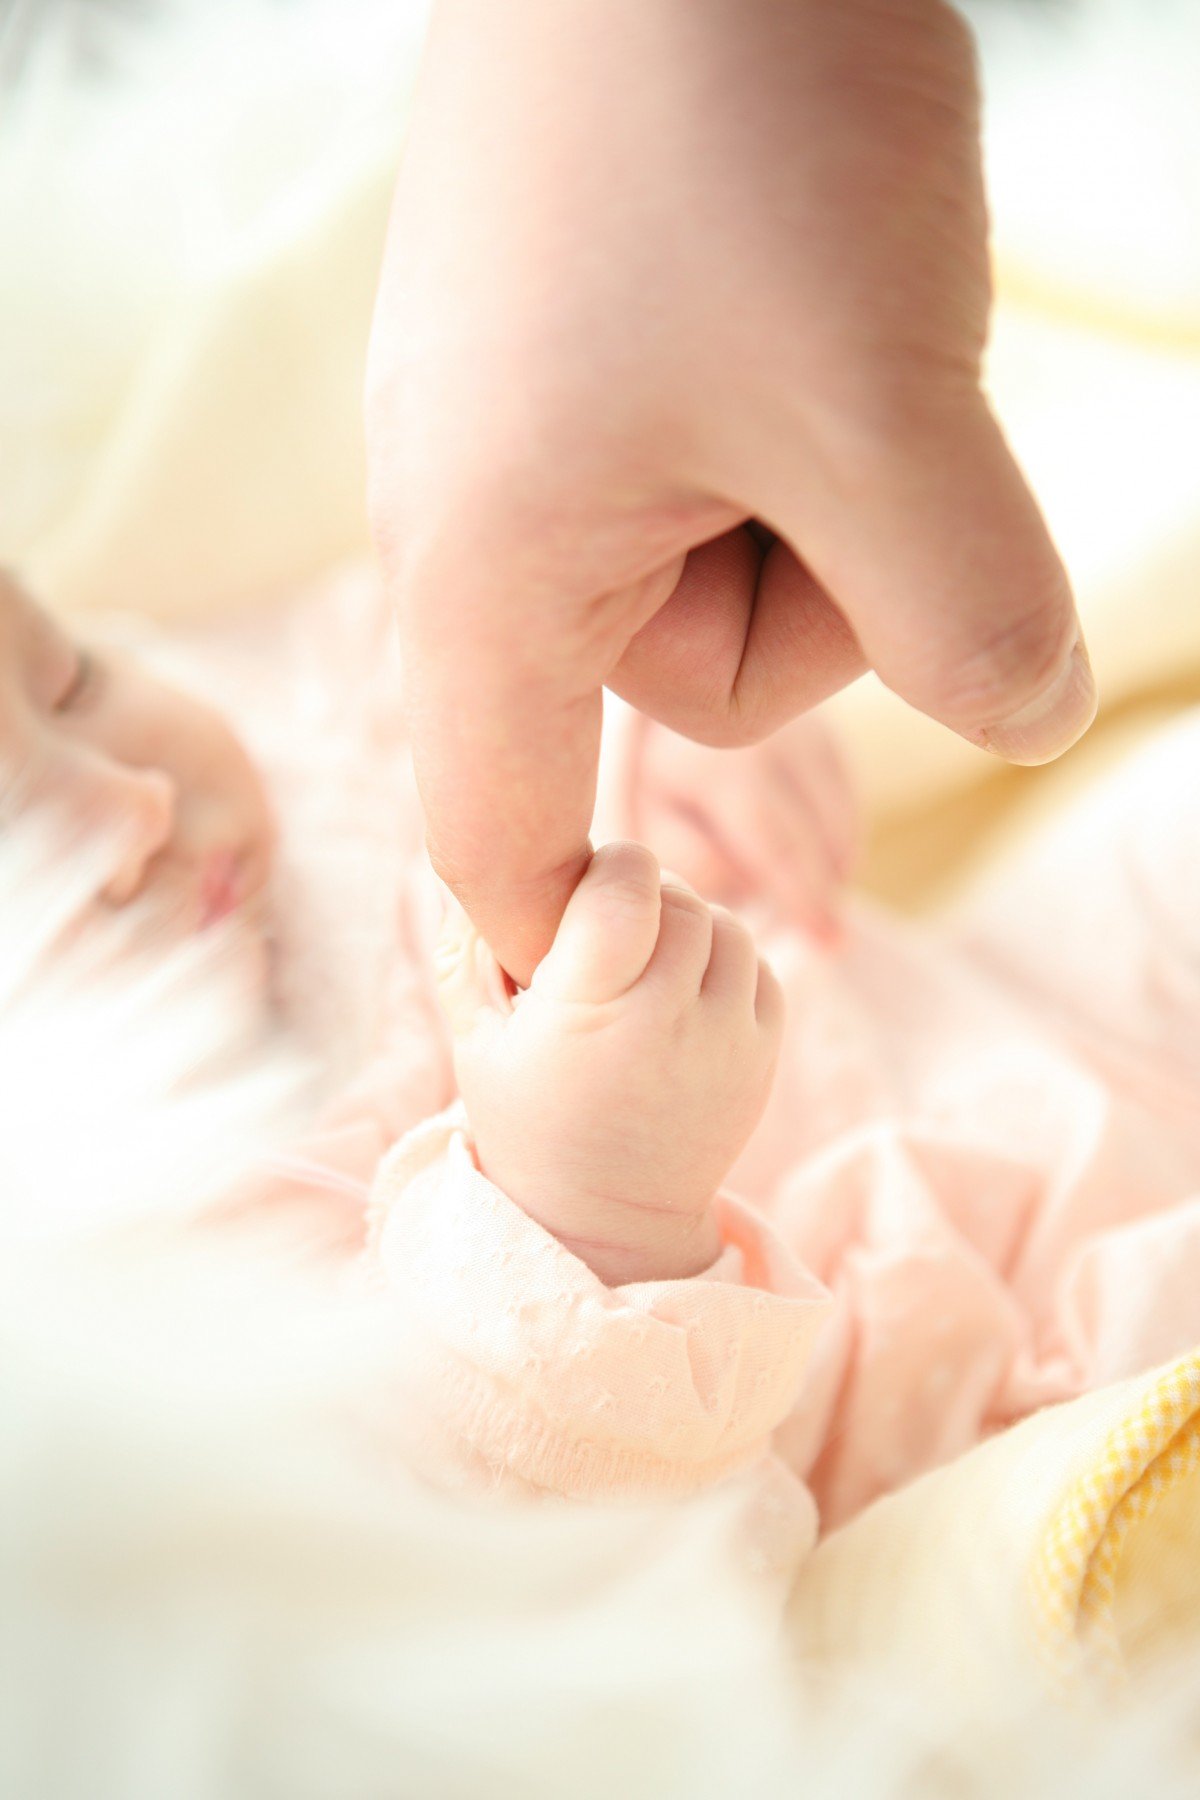 Bebé sosteniendo un dedo. | Imagen: PxHere